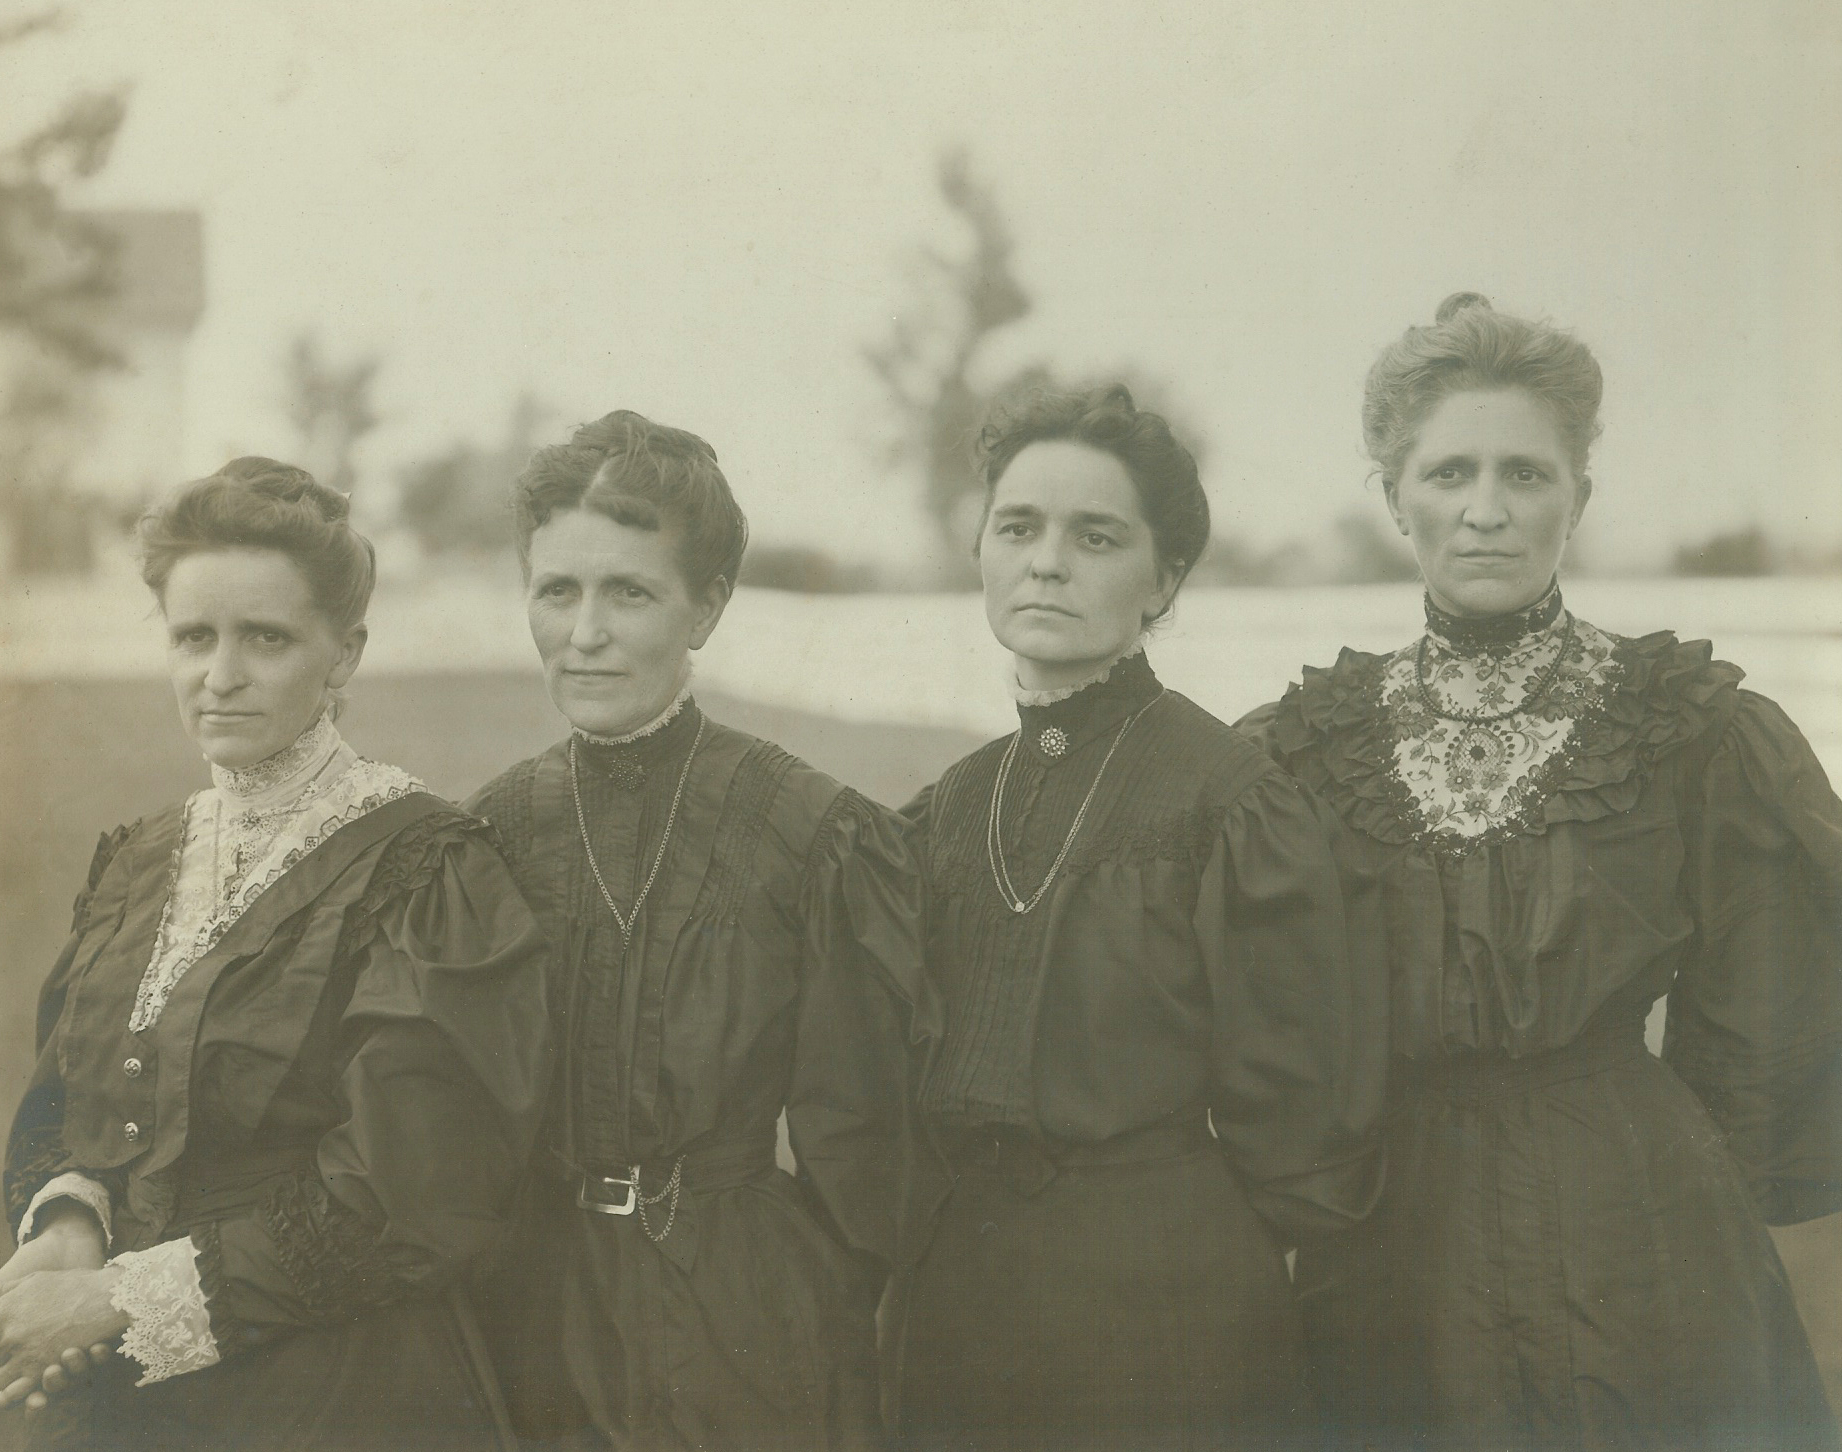 Antique photo of Mary Hains Peterson, Sarepta Hains Short, Hattie Hains Carpenter and Mattie Hains Jefferson